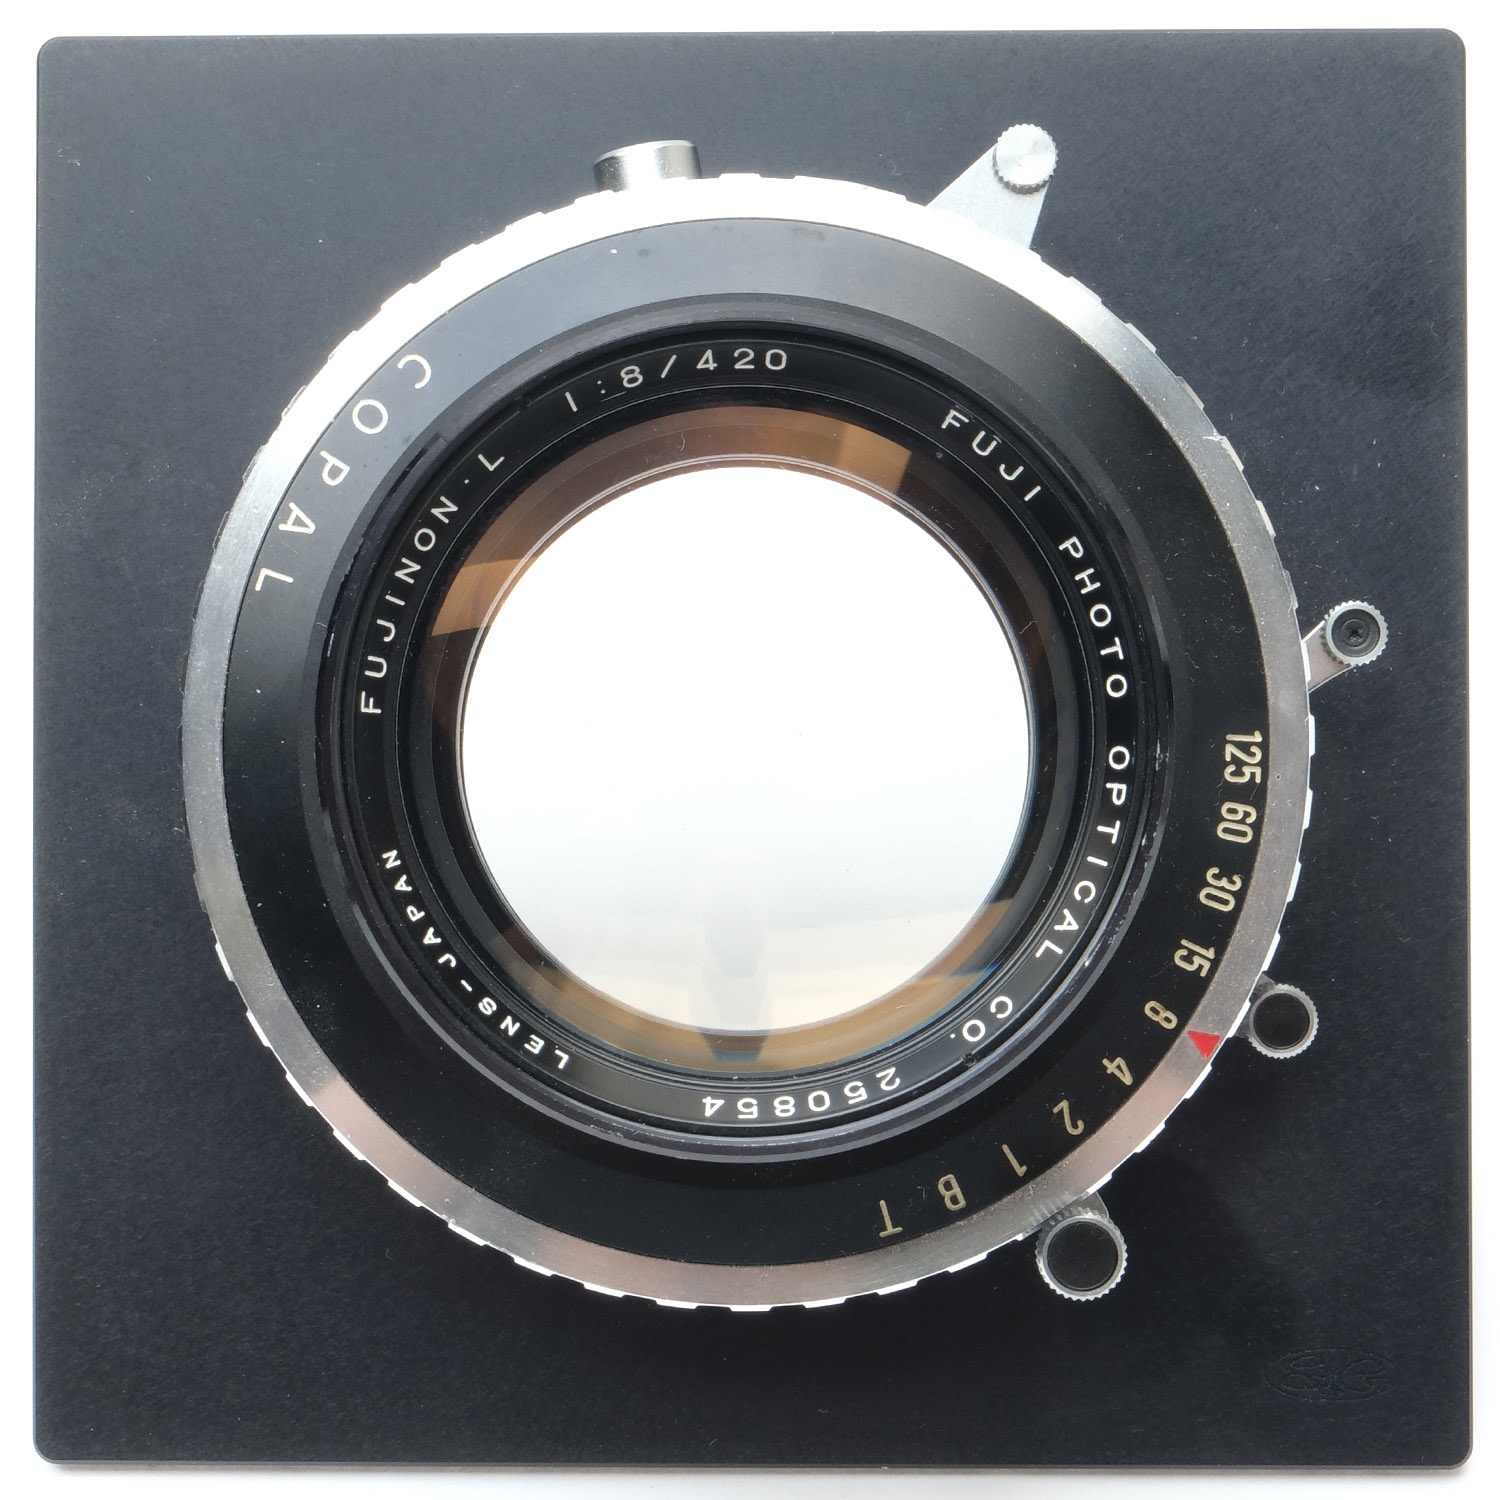 Fuji FUJINON L 420mm F/8 大判カメラレンズ 望遠 限定価格セール